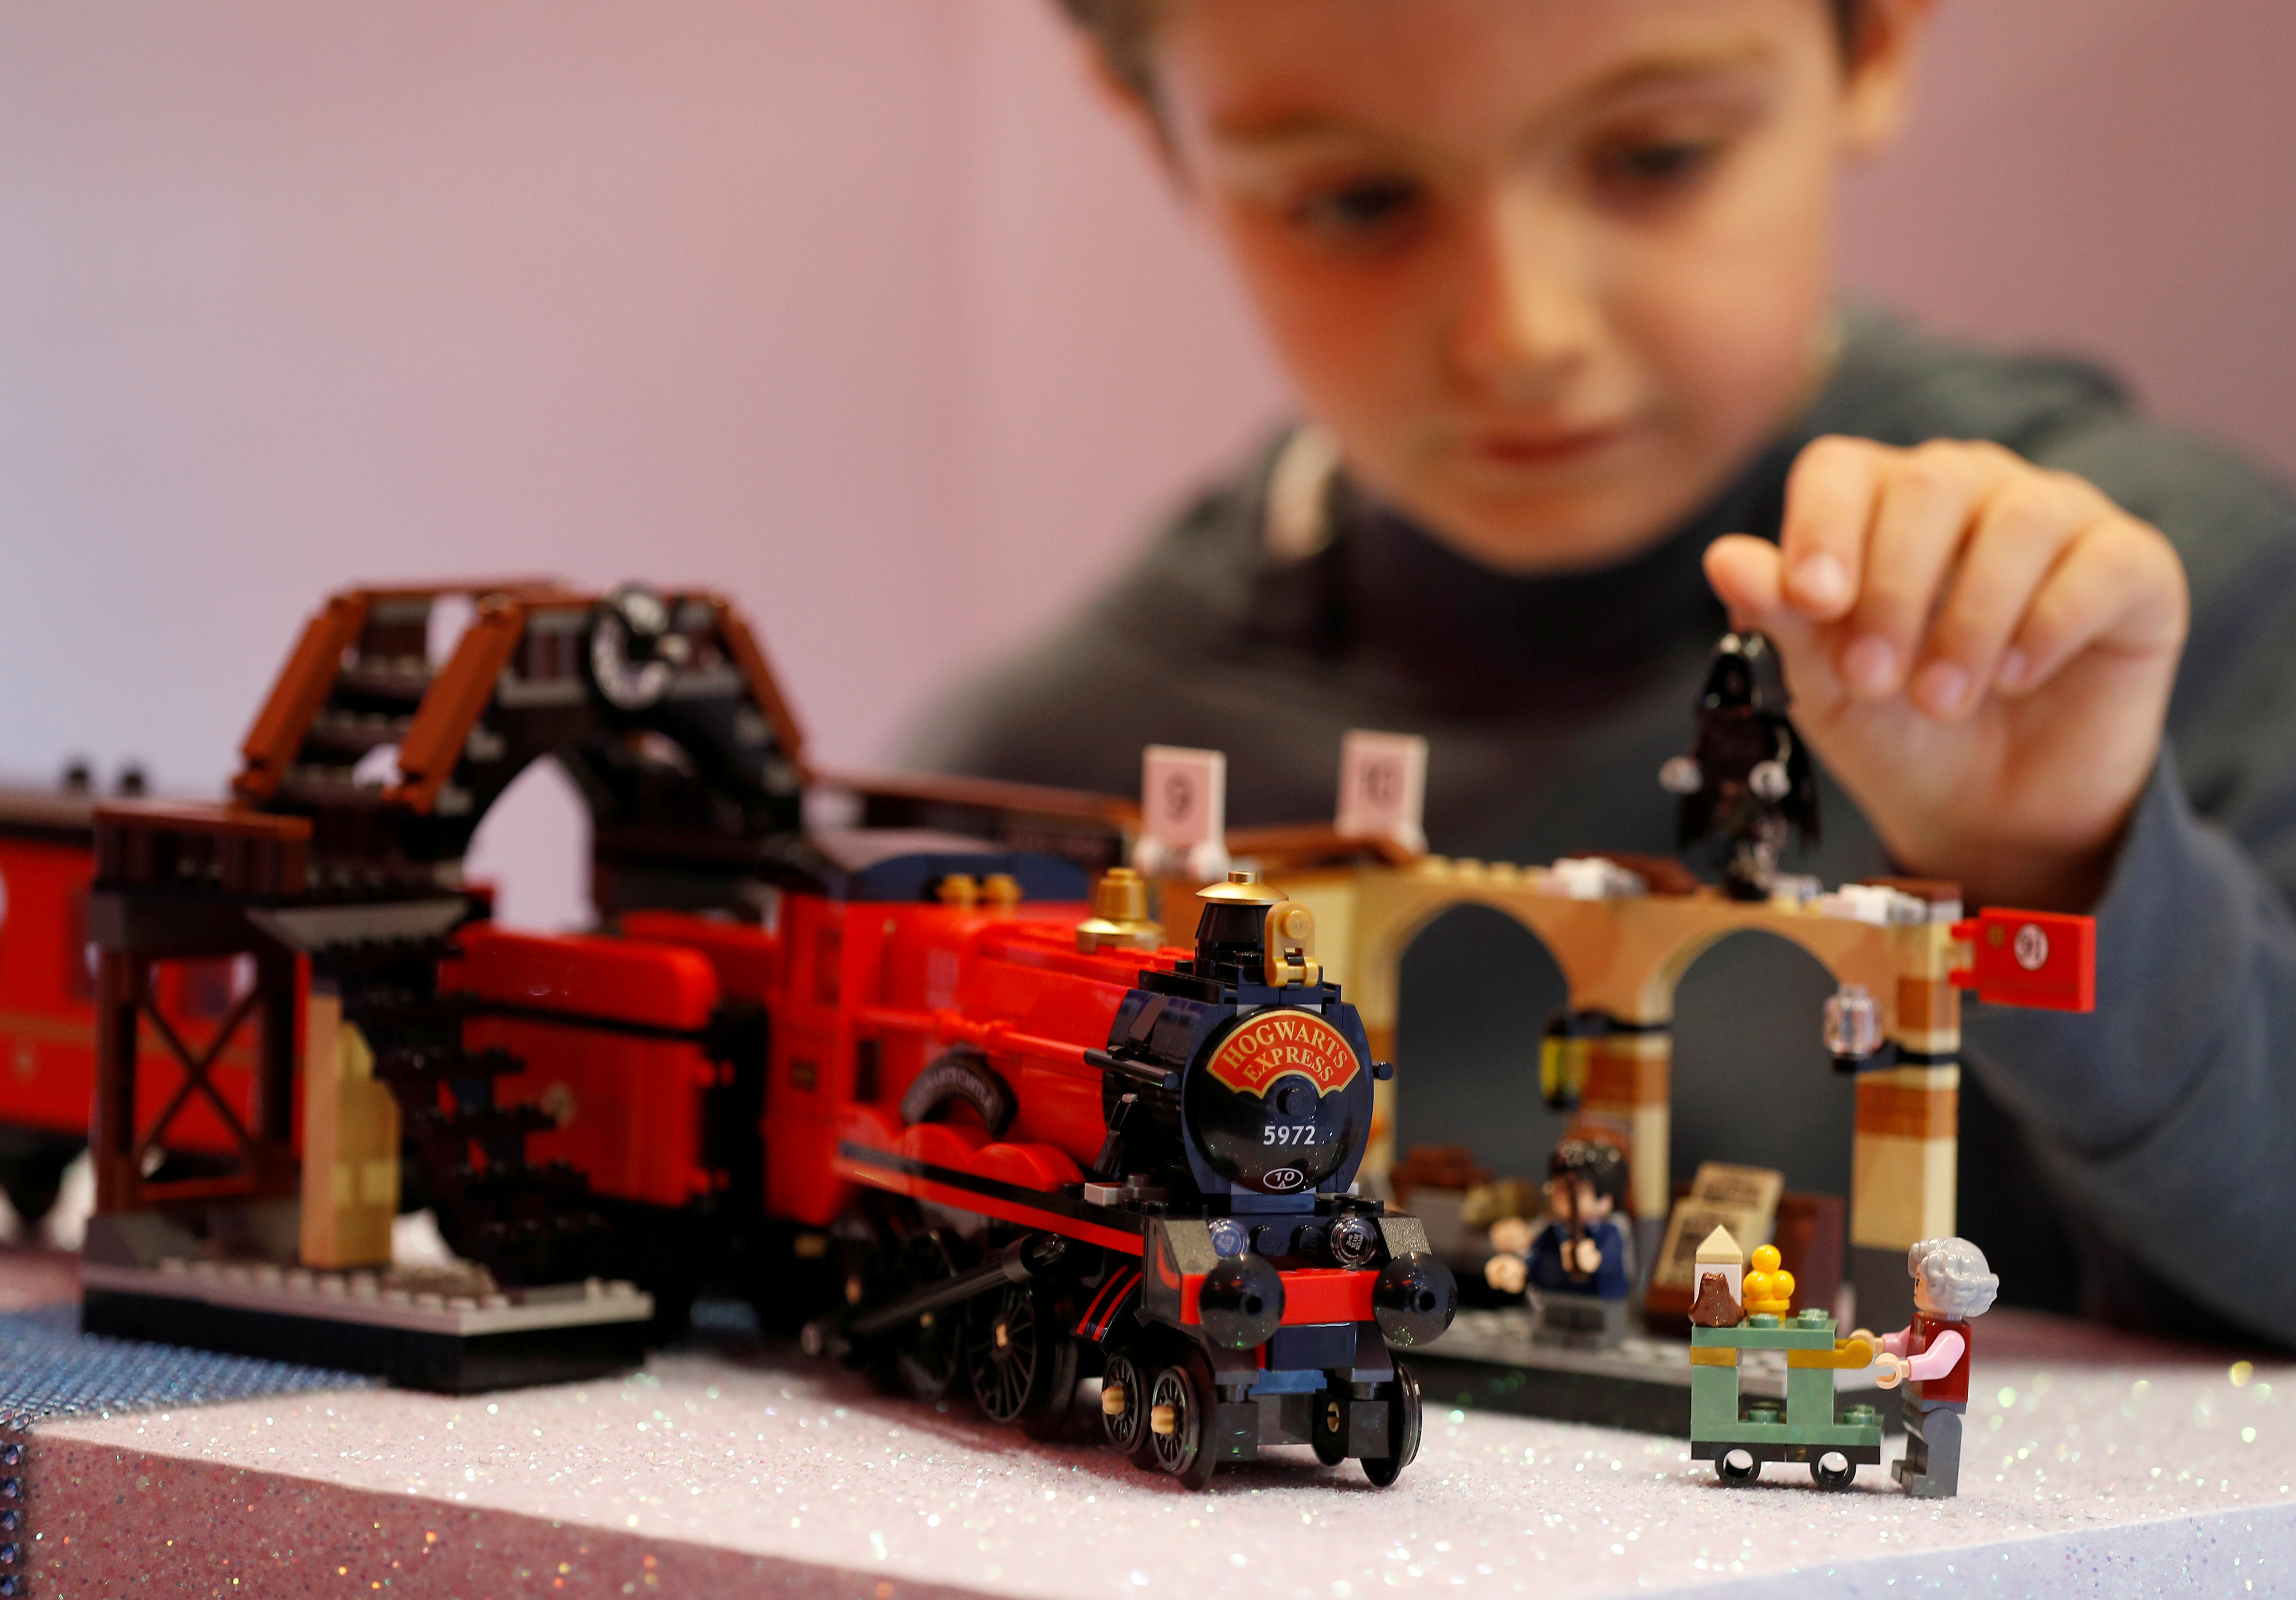 Lego acude a la magia de Harry Potter para elevar sus ventas